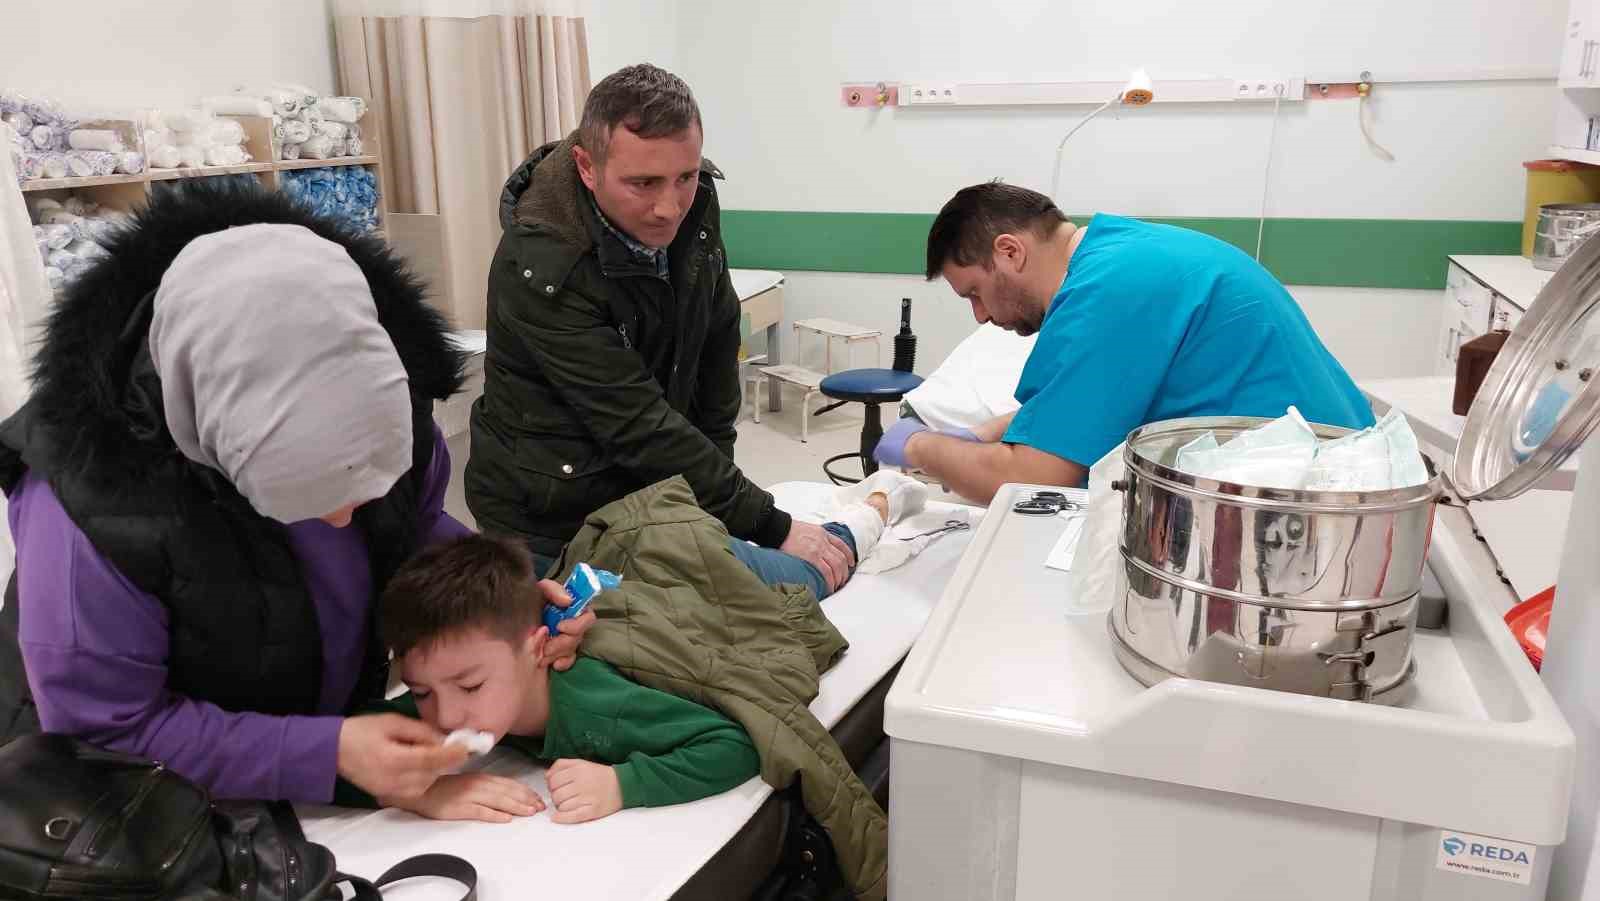 Samsun’da köpek dehşeti: 7 yaşındaki çocuk hastanelik oldu
